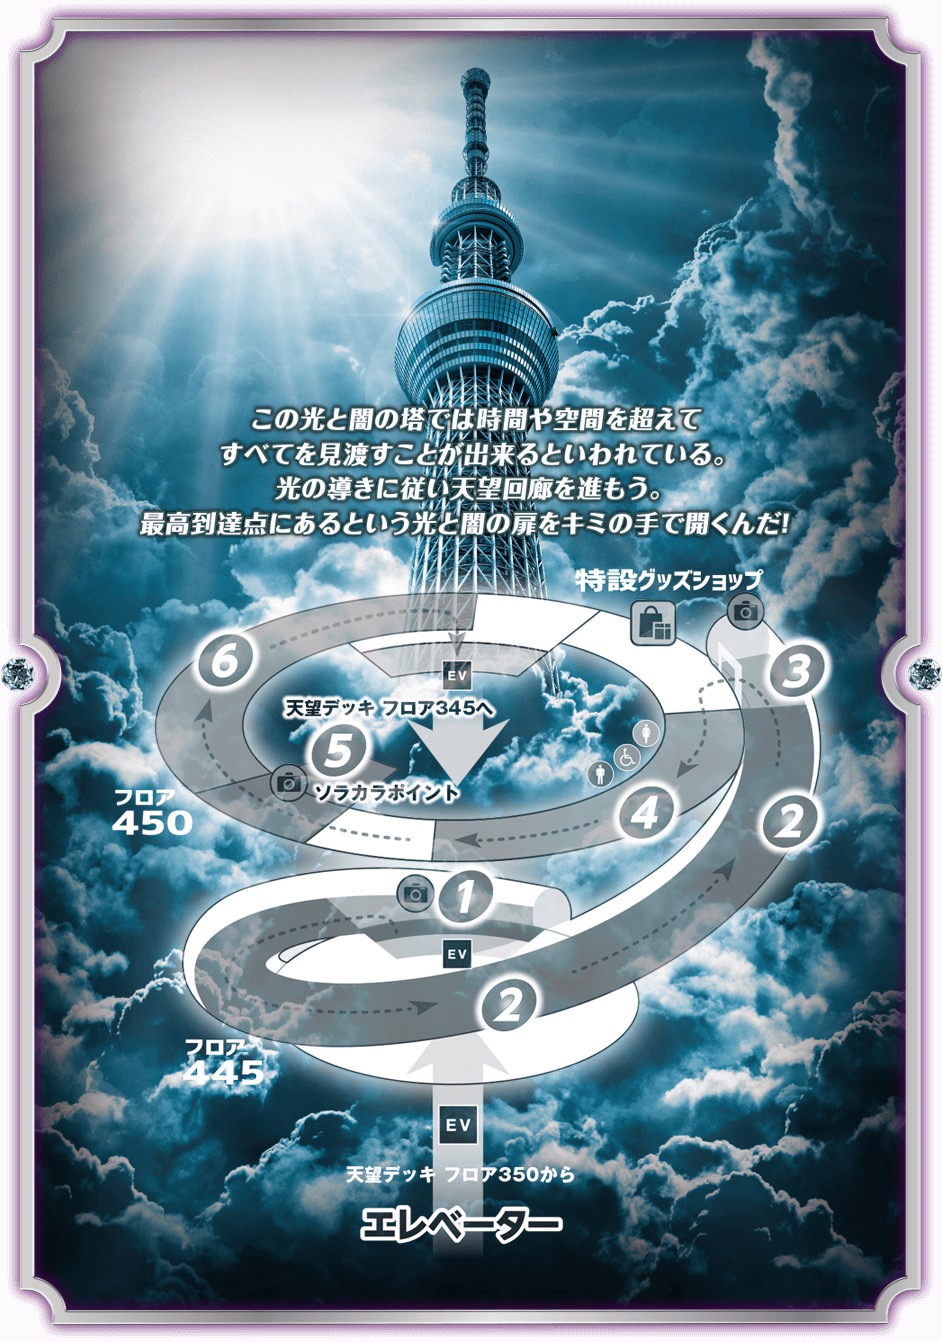 キングダムハーツ3 × 東京スカイツリー 1.8-3.5「光と闇の塔」コラボ開催